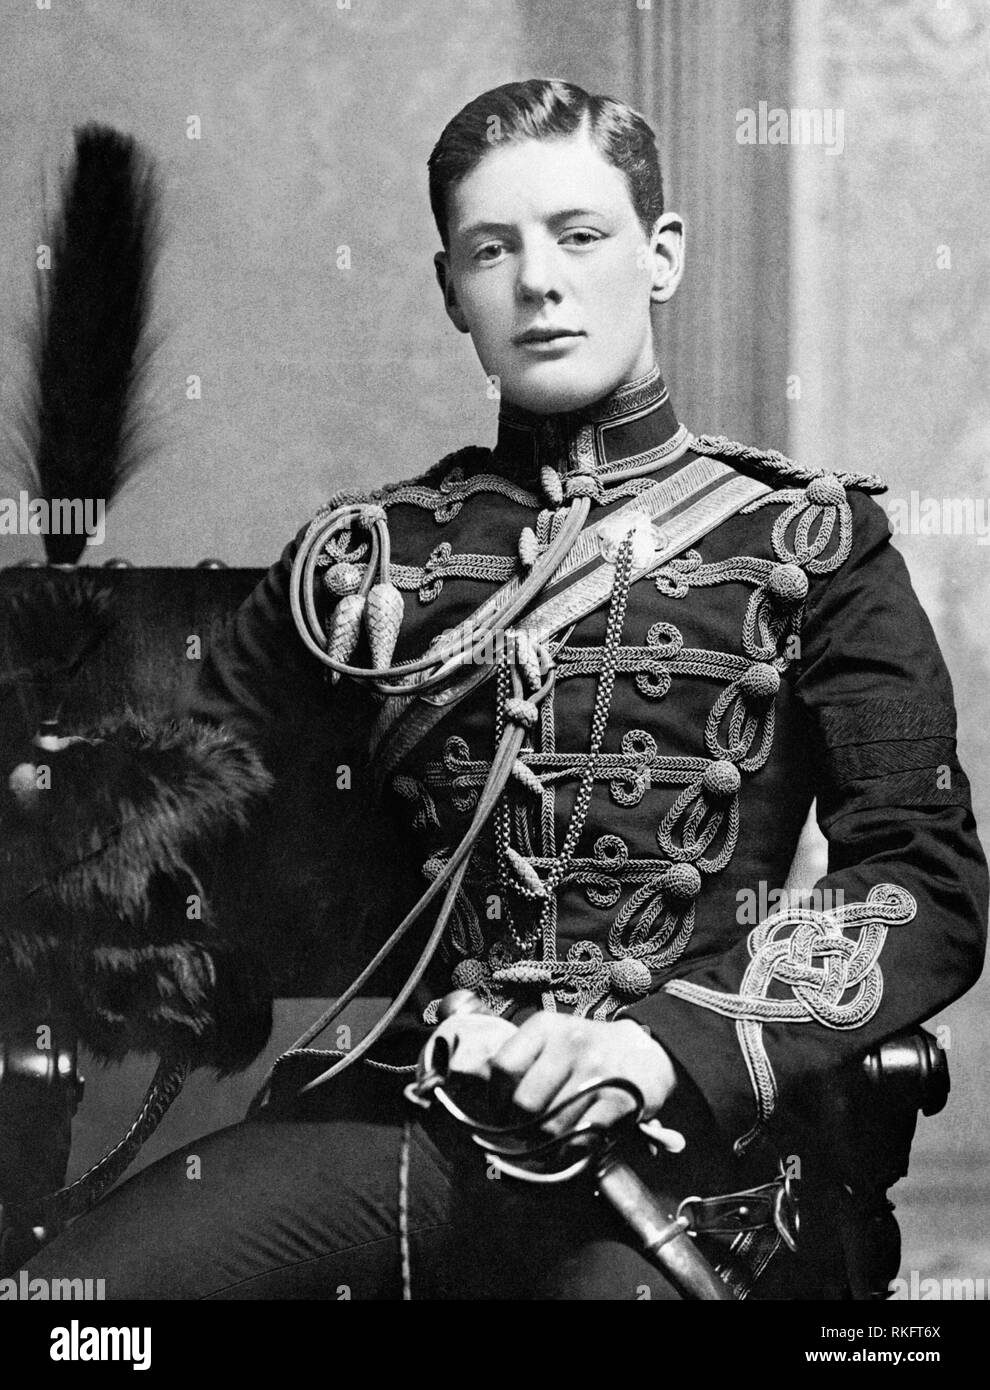 Ritratto di secondo tenente Winston Churchill del quarto Queen's proprio ussari nel 1895 come un giovane uomo Foto Stock